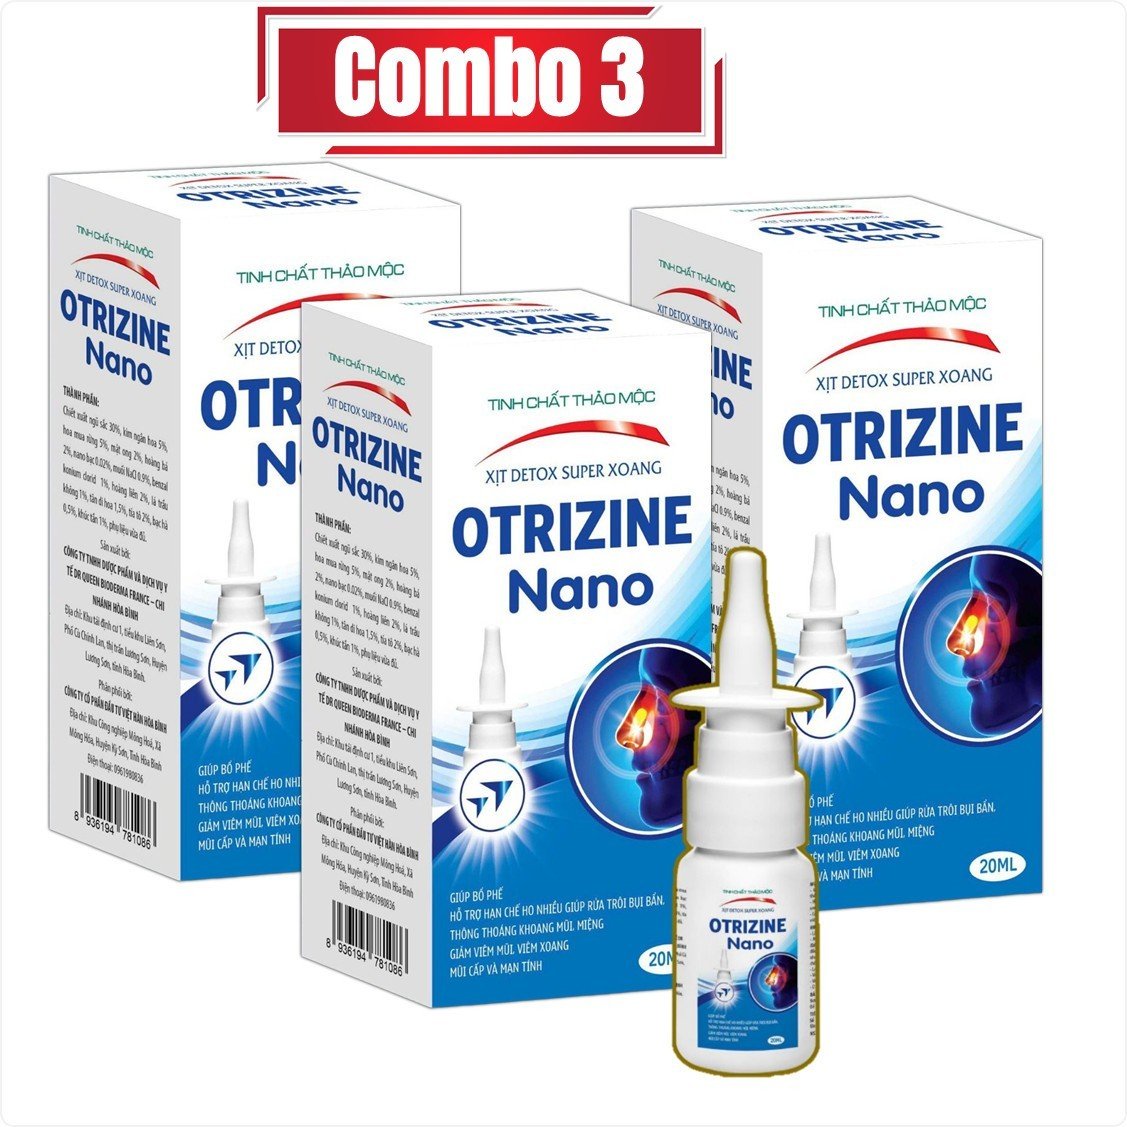 Combo 3 hộp Xịt Xoang Otrizine Nano giúp làm giảm các triệu chứng của viêm